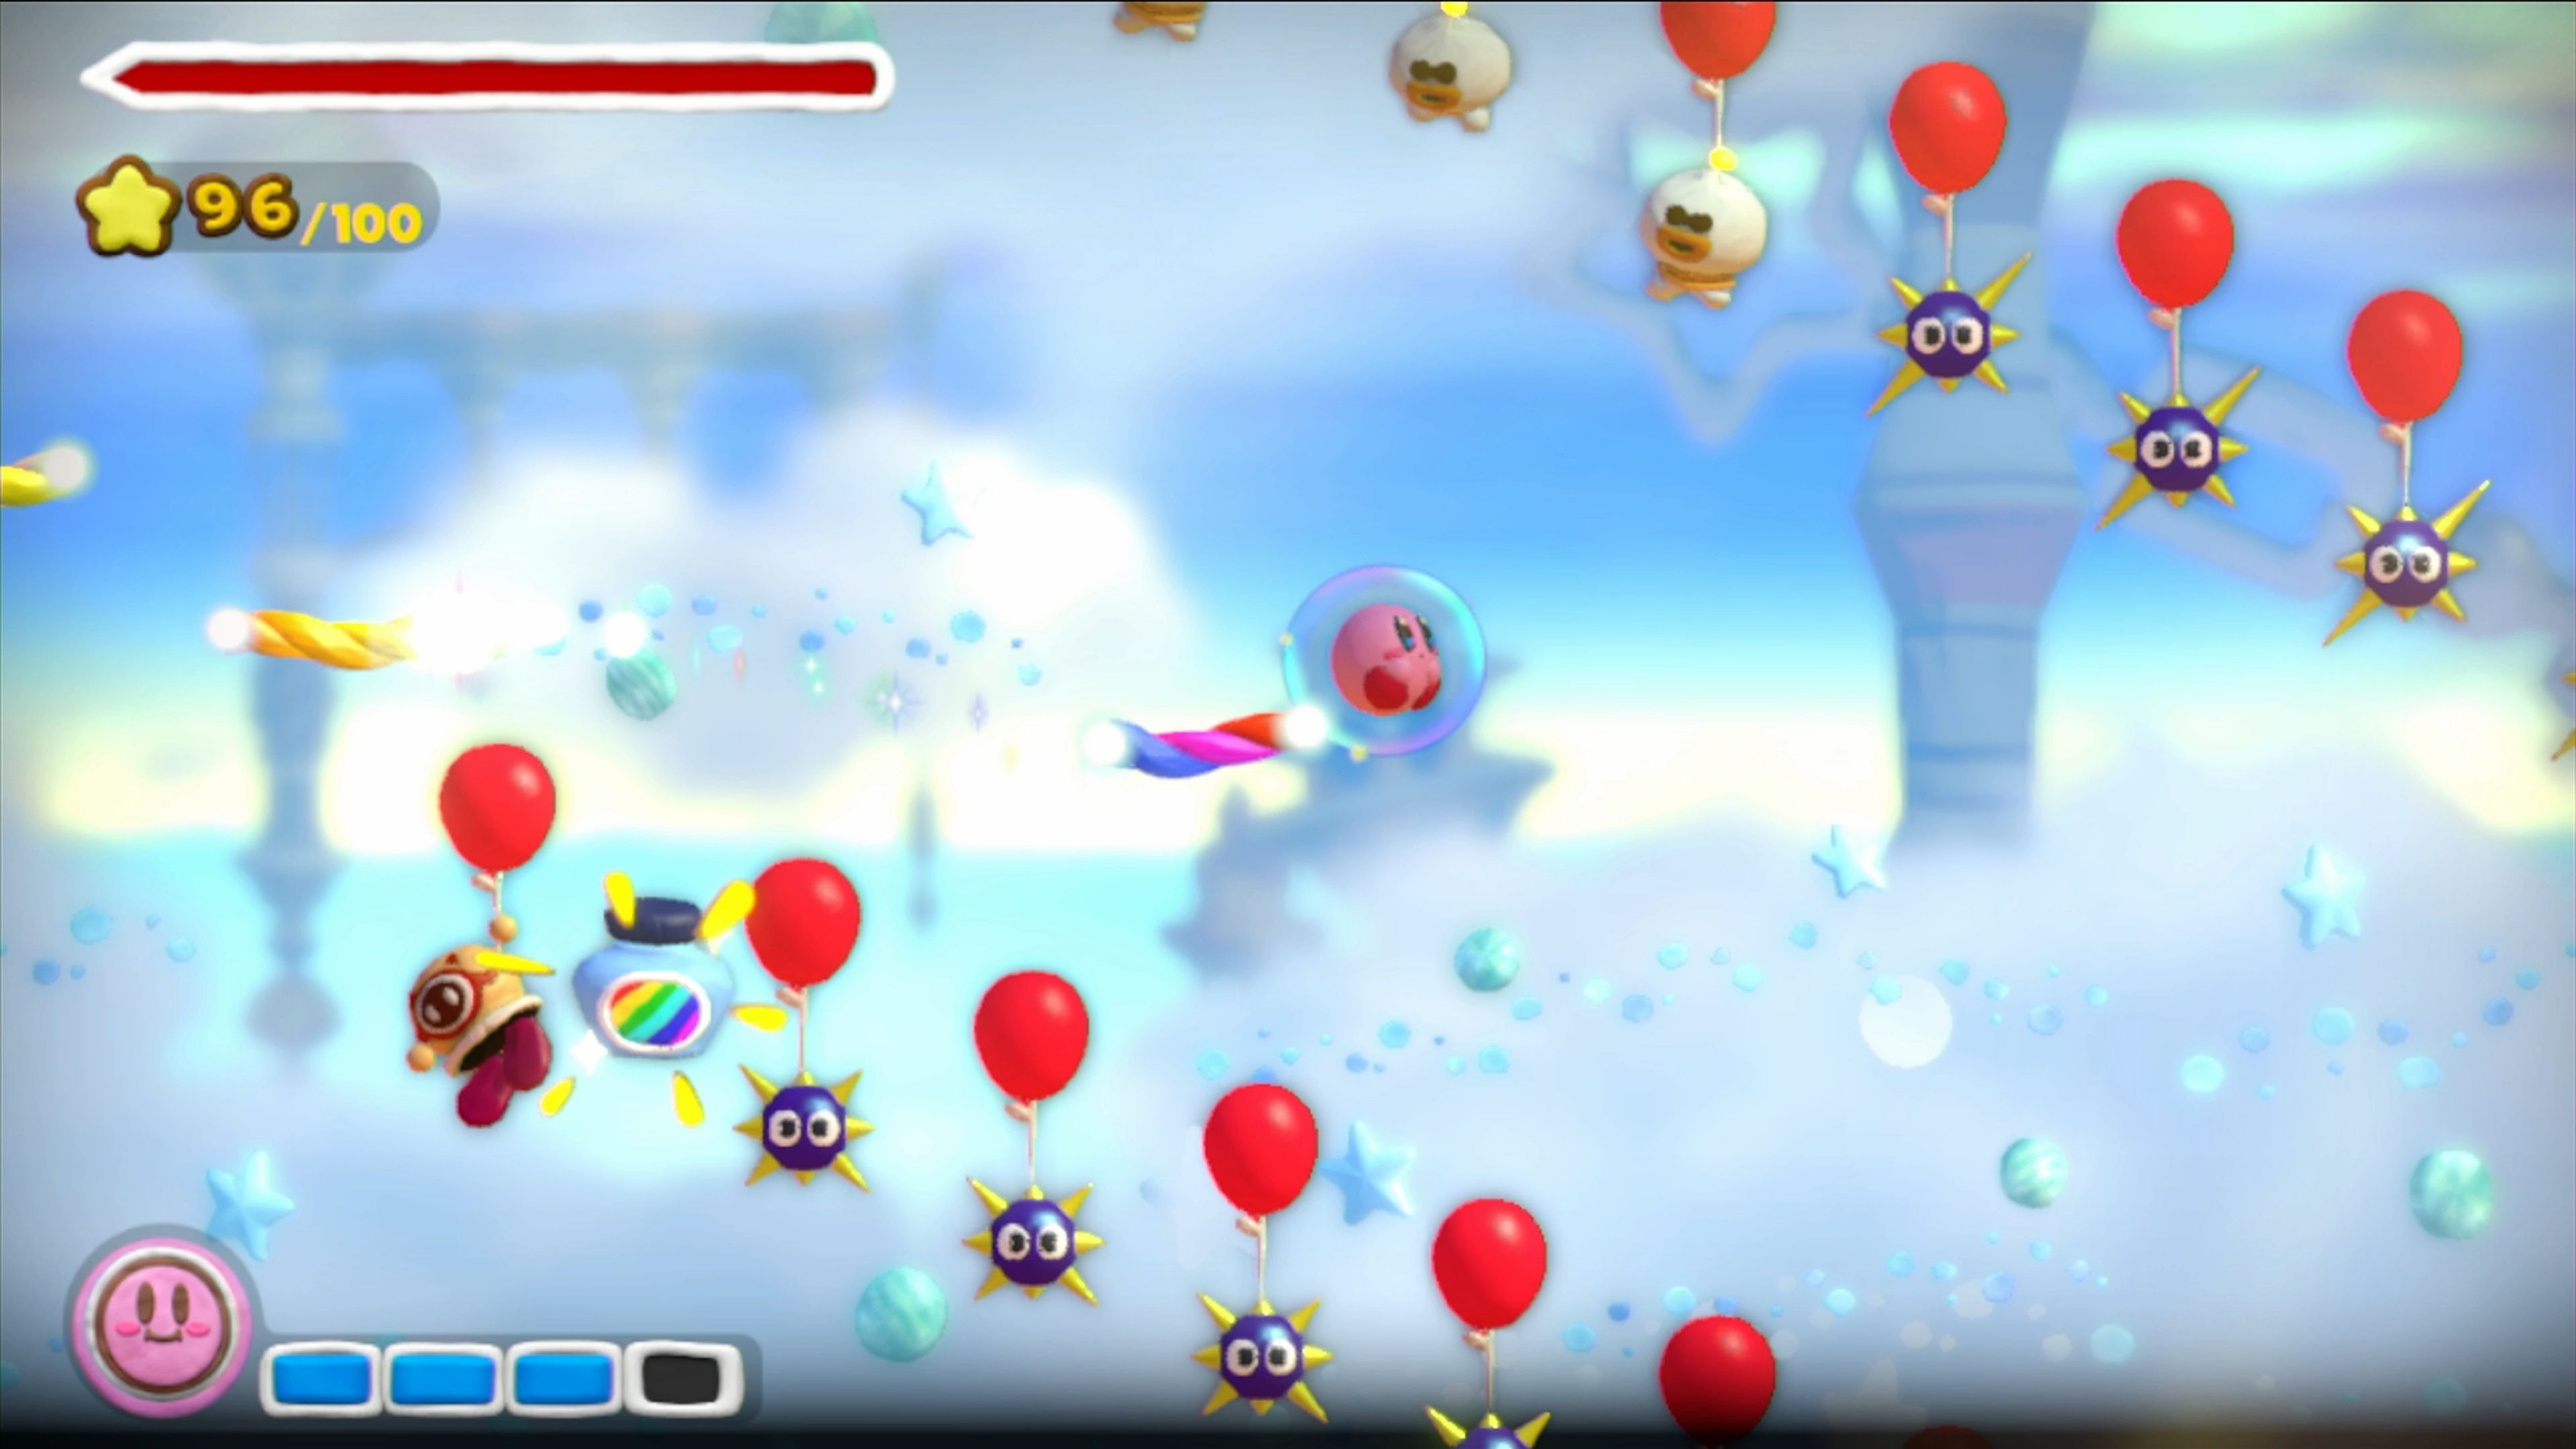 Análisis de Kirby y el Pincel Arcoíris para Wii U